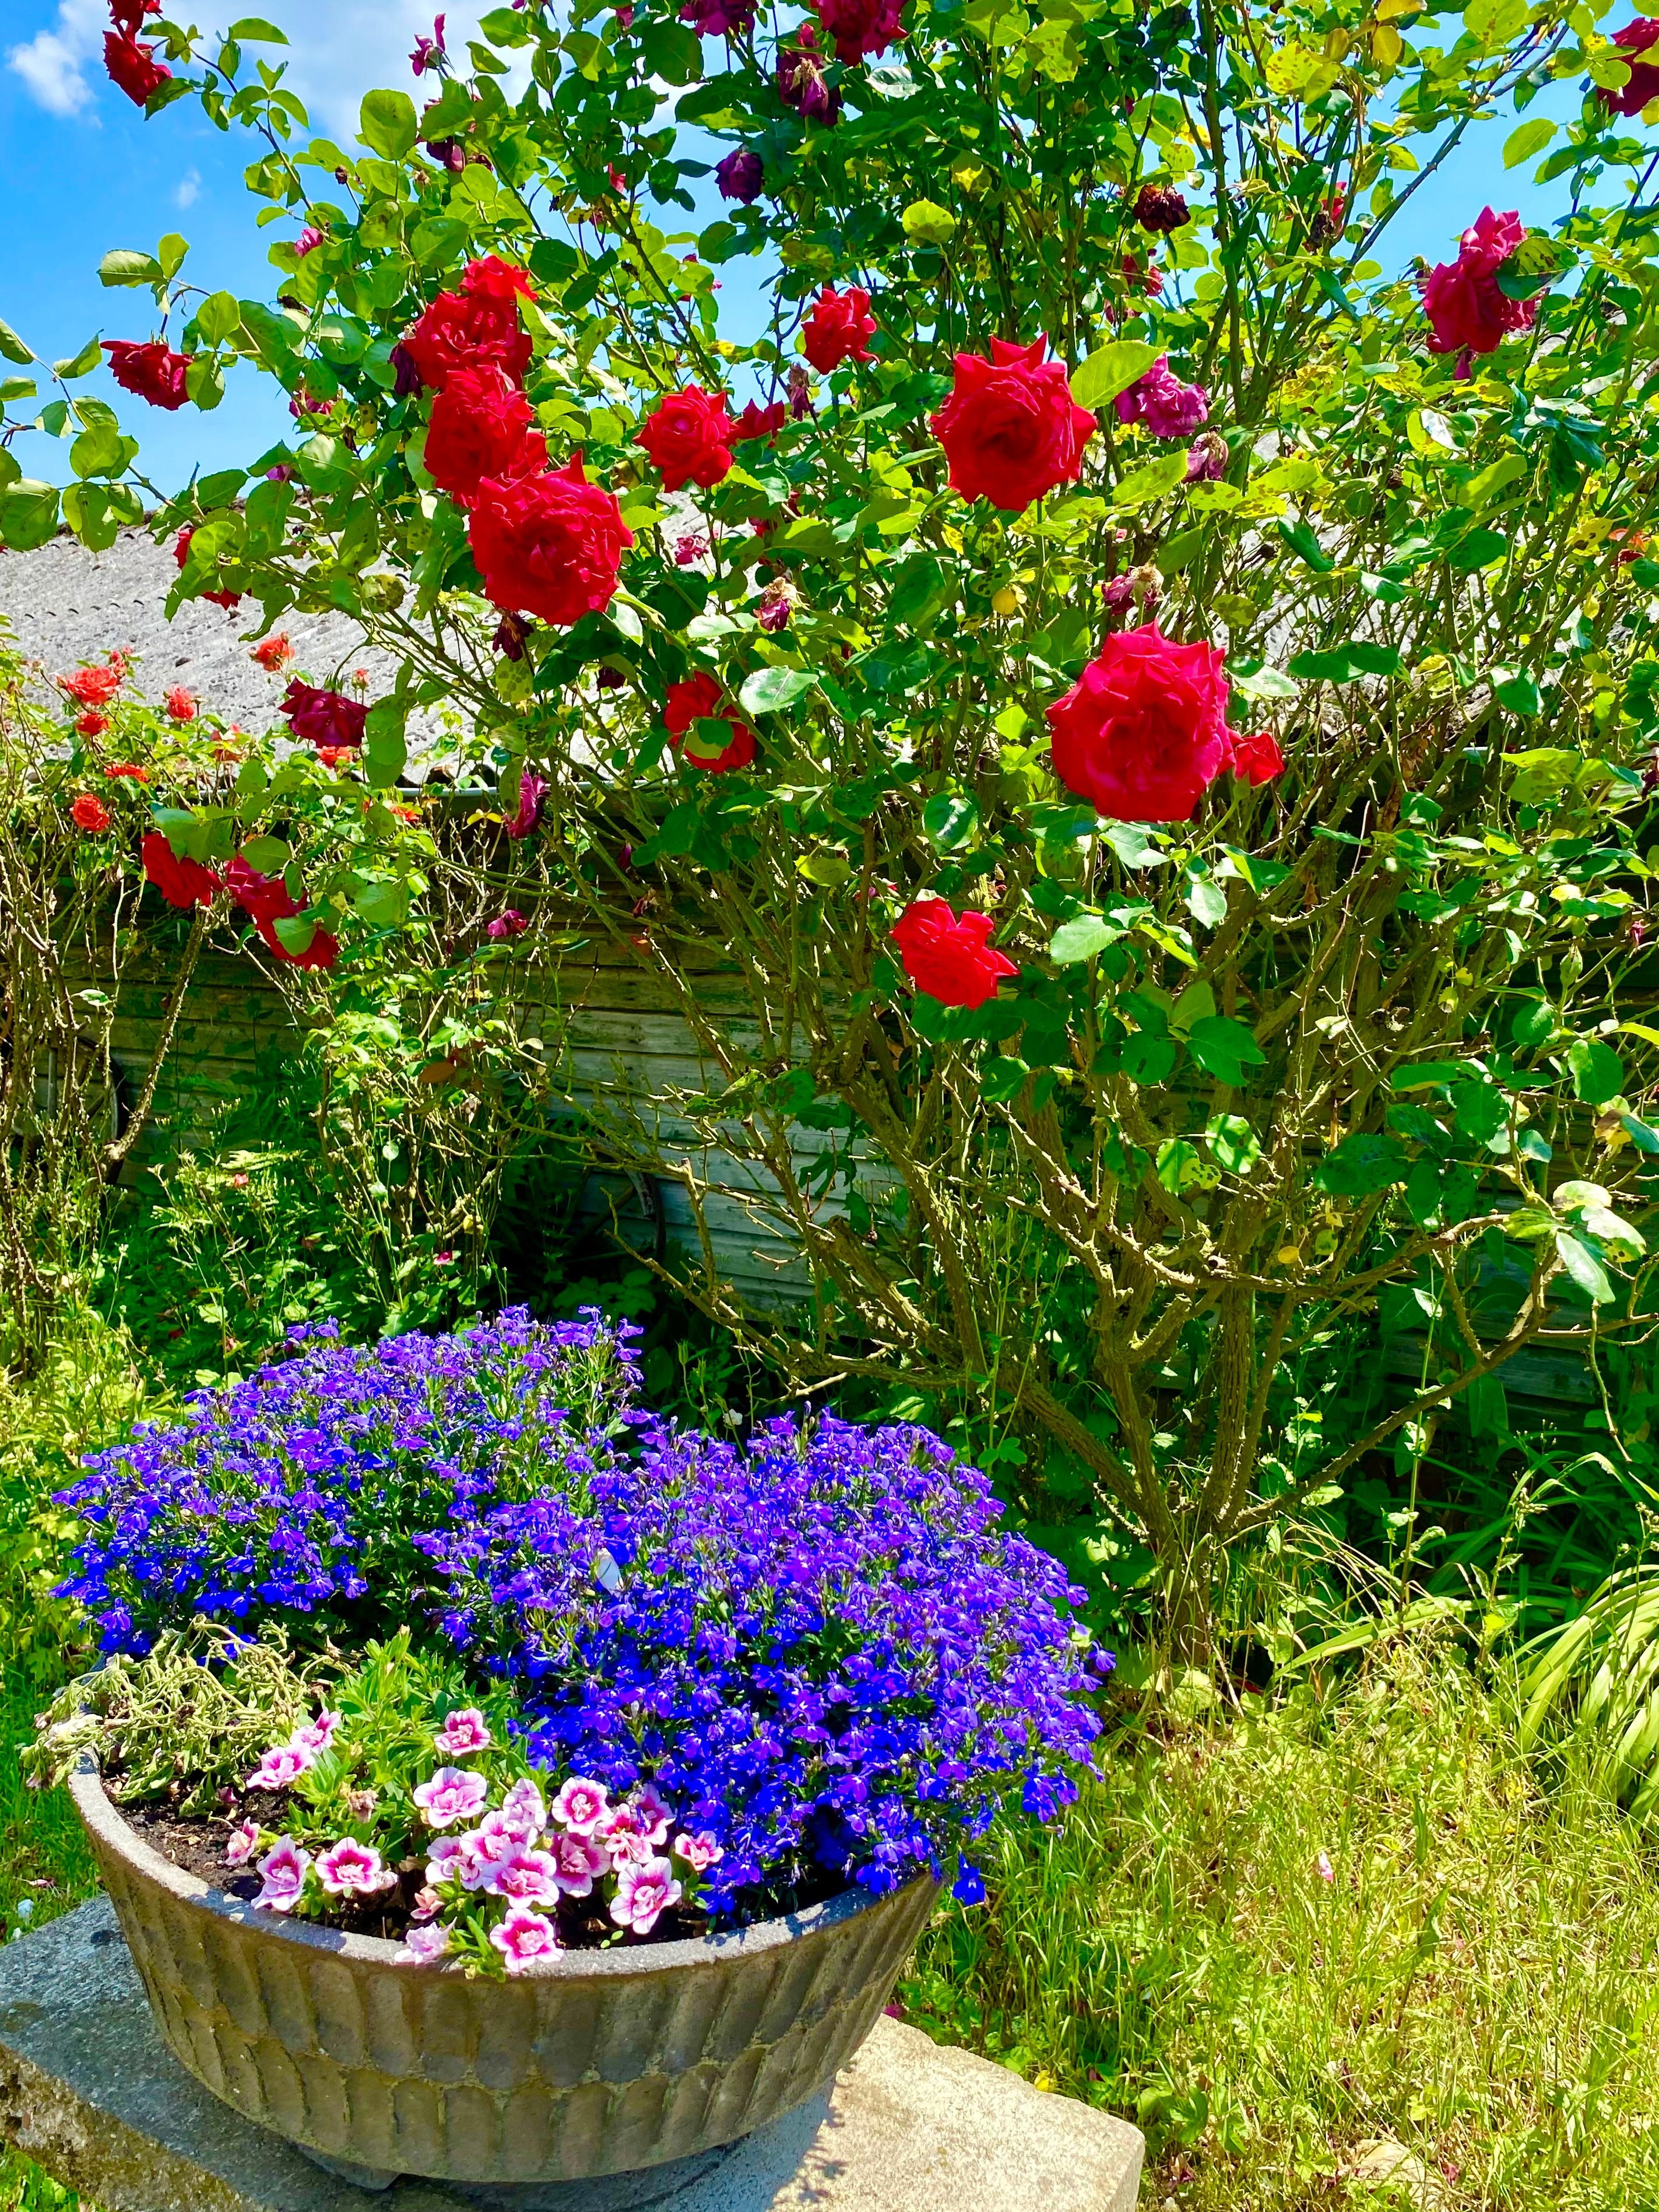 #rosen #garten - diese Farben 
#pflanzenliebe #blumenliebe #frühjahr